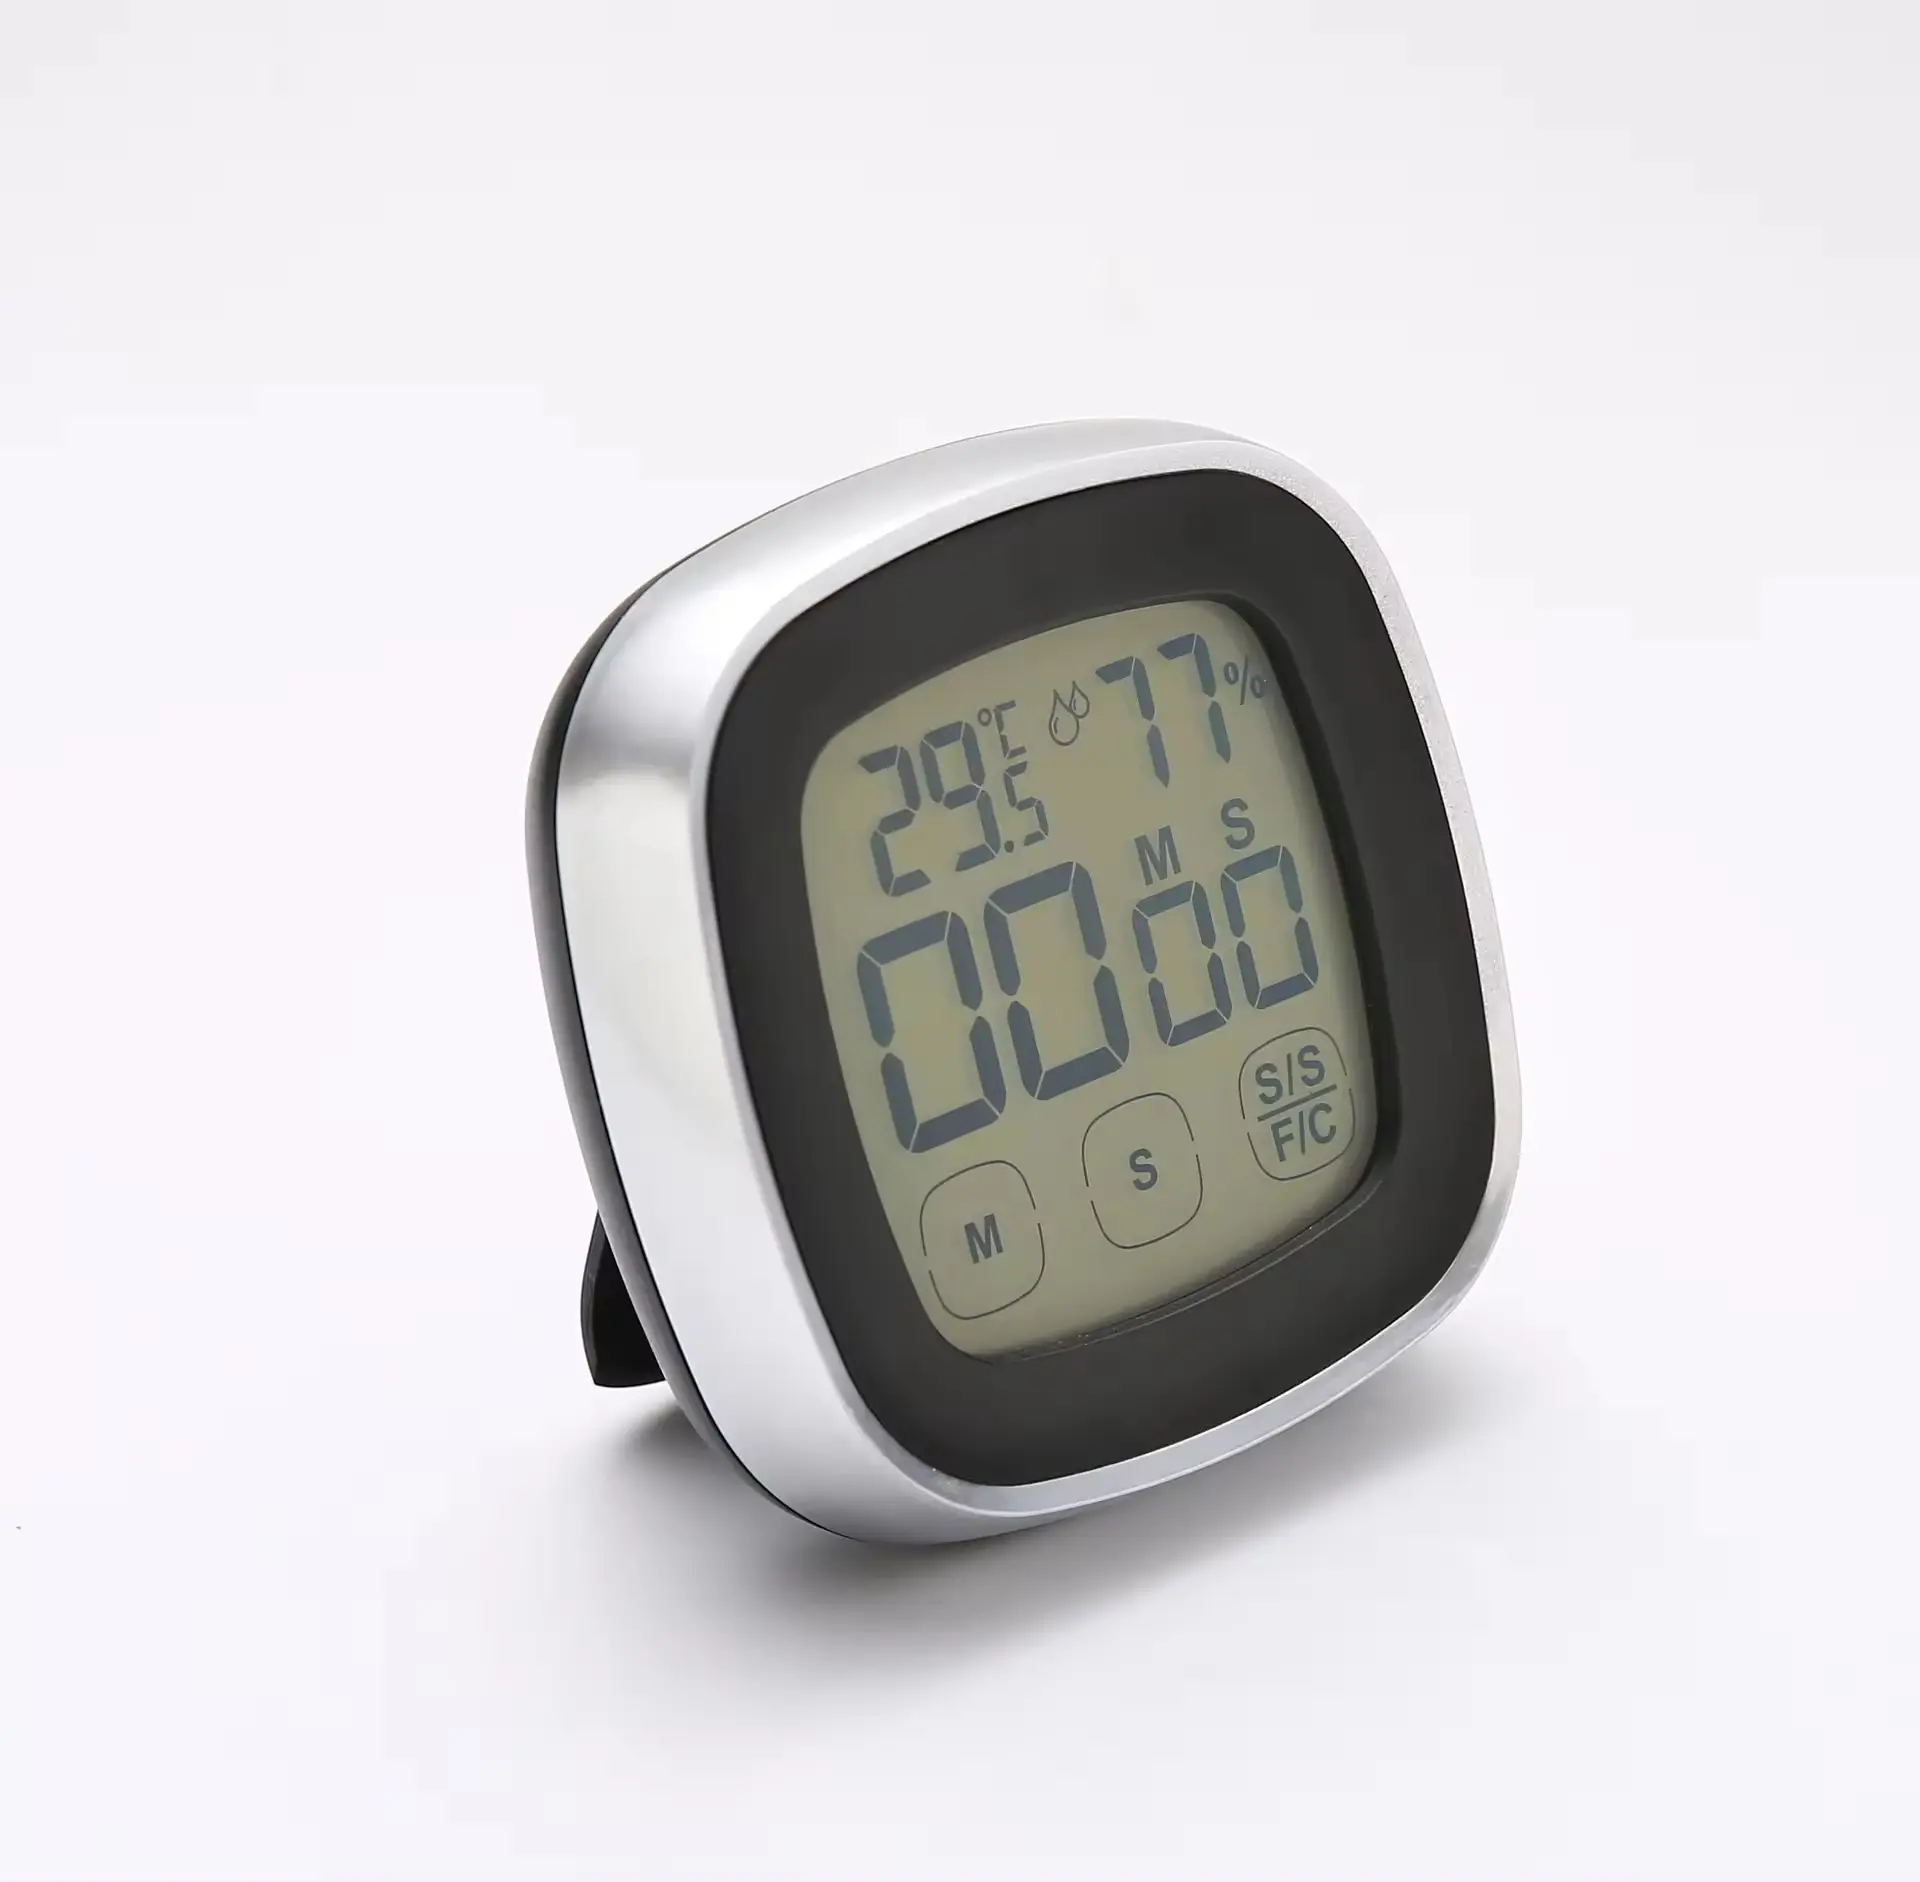 Vente chaude usage domestique électronique numérique tactile panneau opérationnel thermomètre intérieur hygromètre LCD horloge minuterie